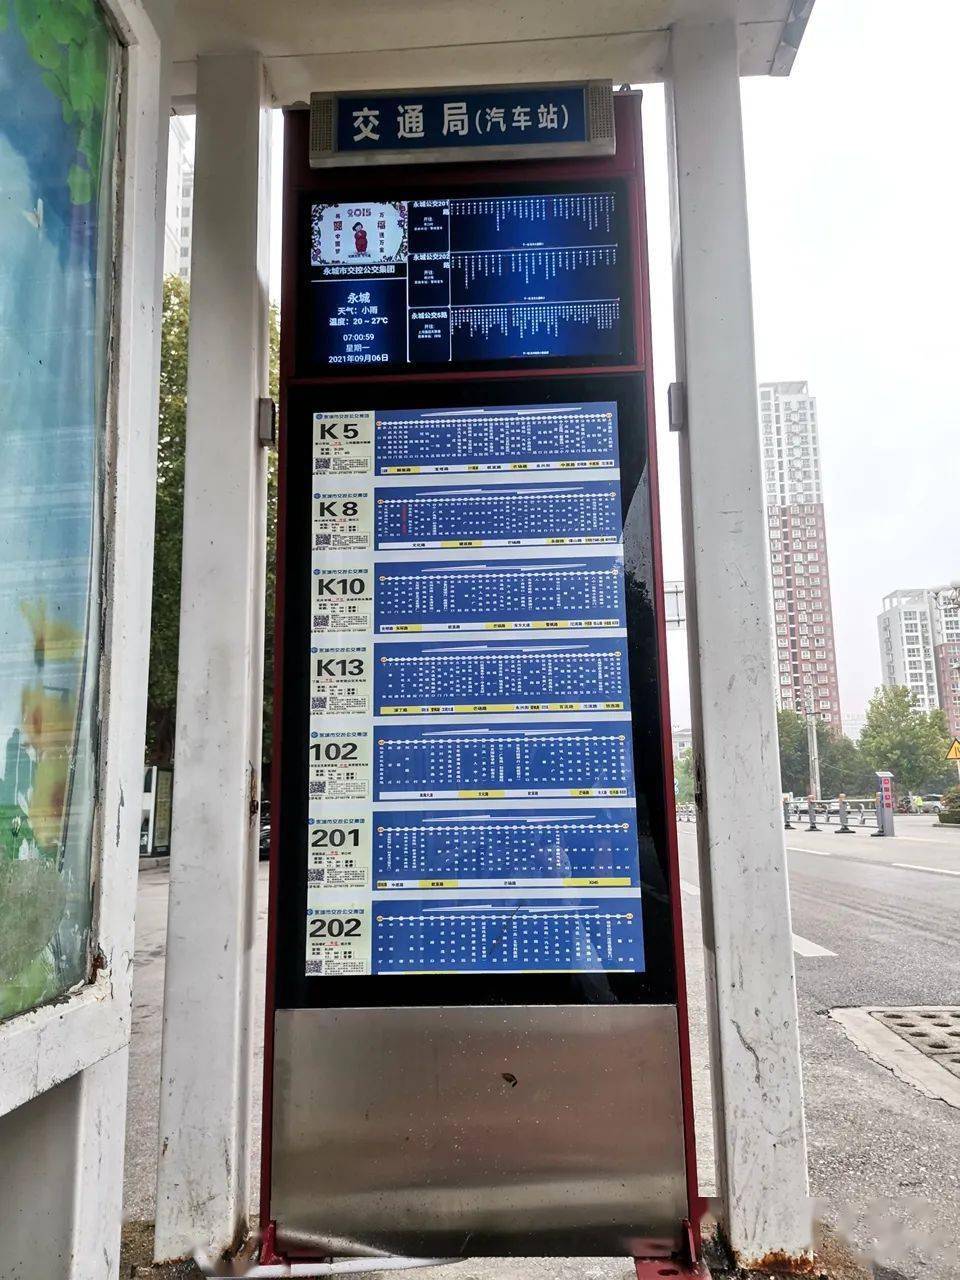 智能公交站牌亮相永城街头